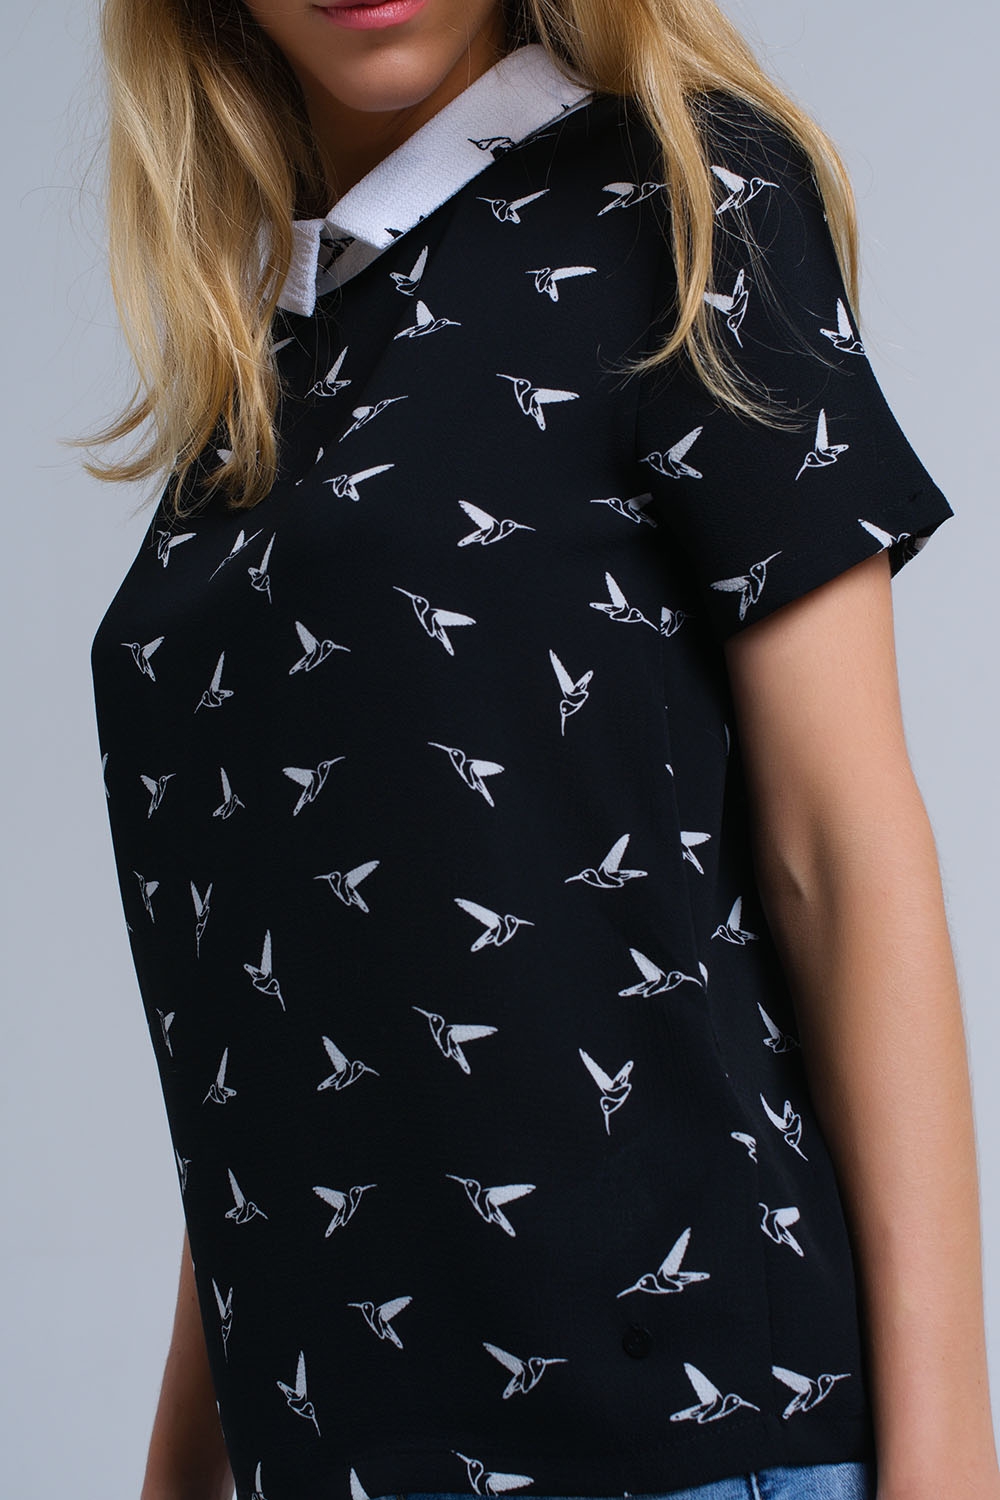 Schwarzes Hemd mit weißen aufgedruckten Vögeln